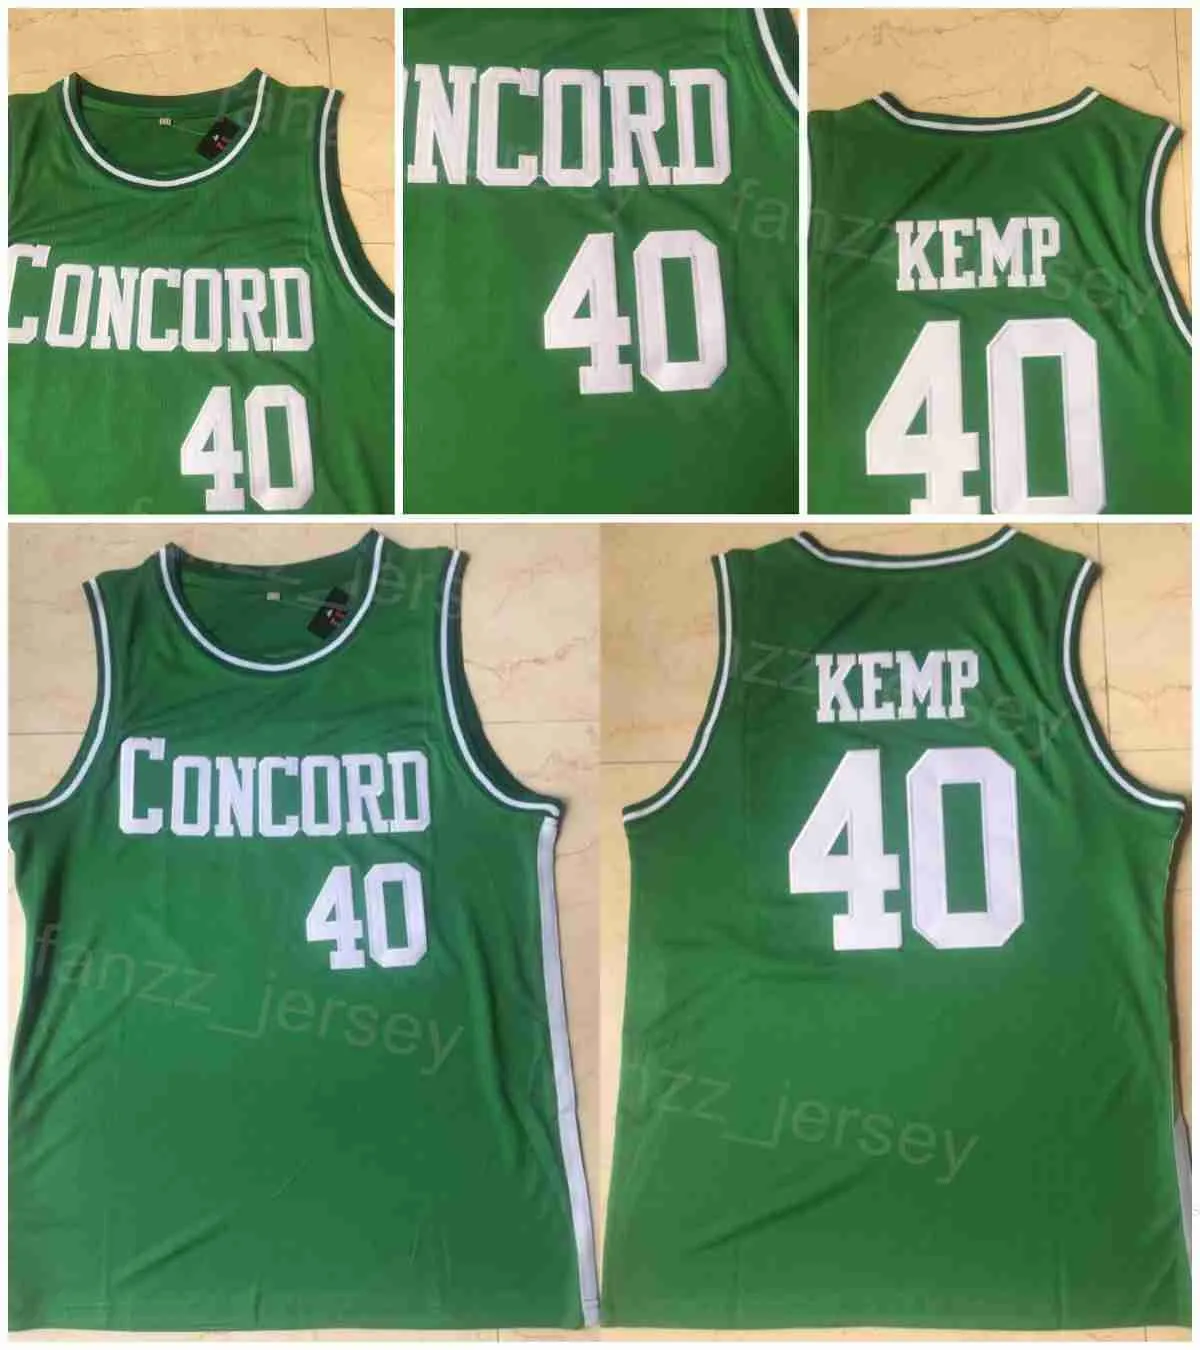 Concord Academy High School 40 Shawn Kemp Jersey Basketball College University Koszulka All Szygowana drużyna kolor zielony dla fanów sportu oddychaj Pure Cotton Man NCAA